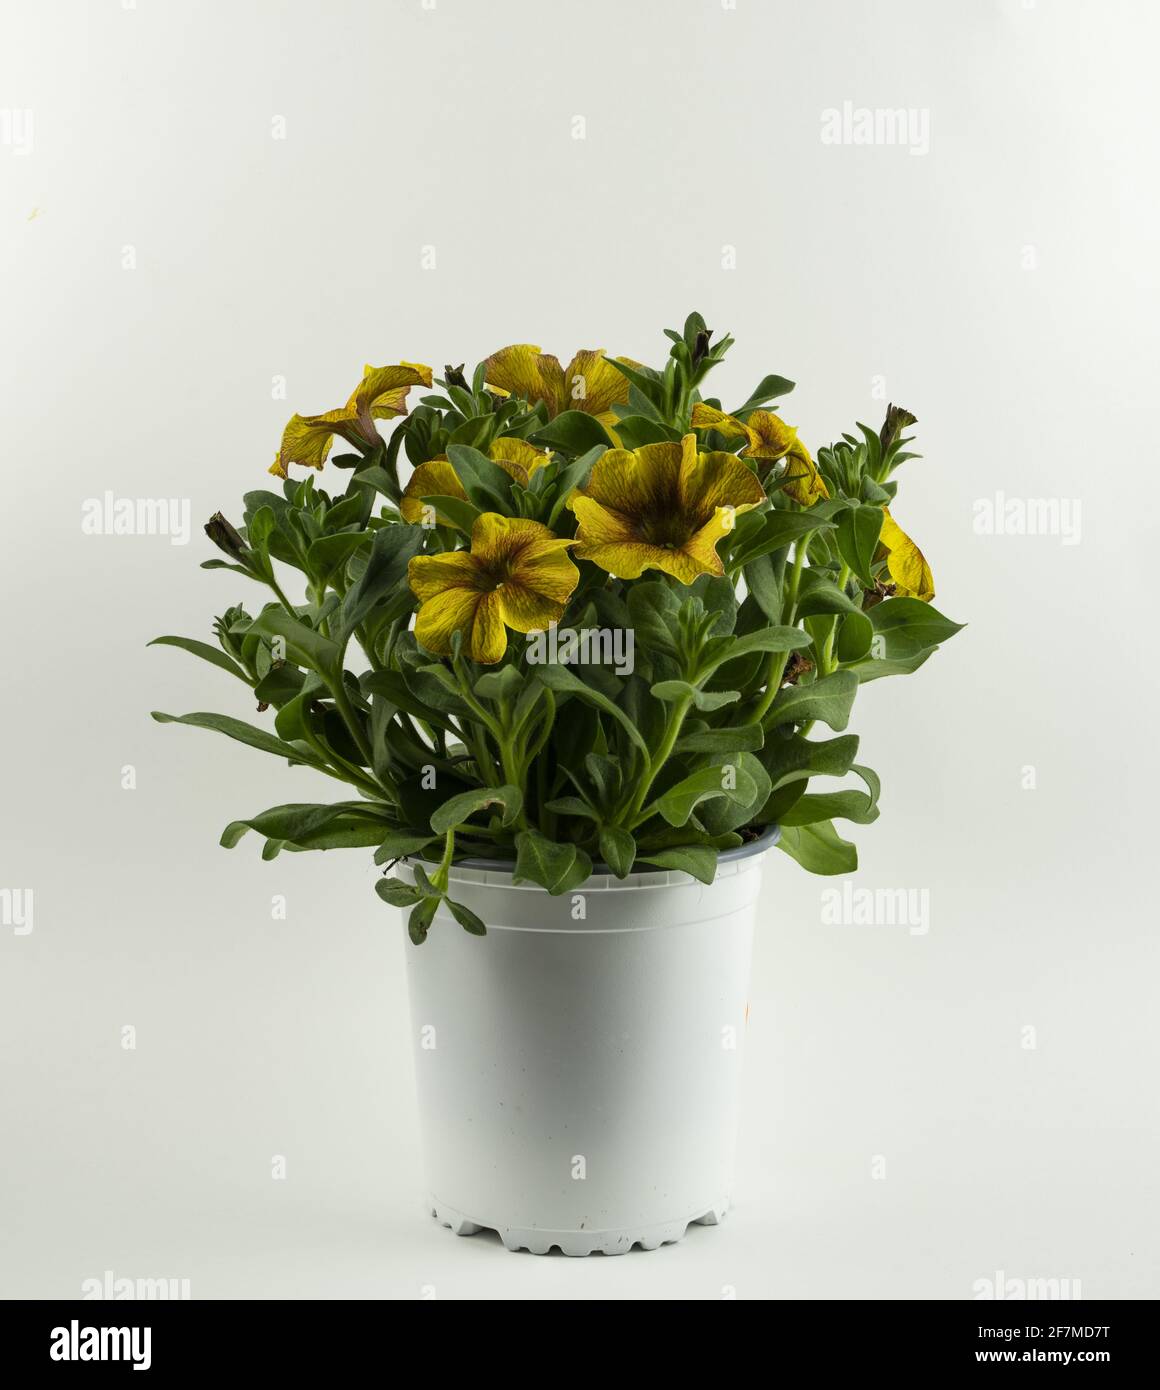 petunia axillaris in vaso con sfondo bianco Foto Stock